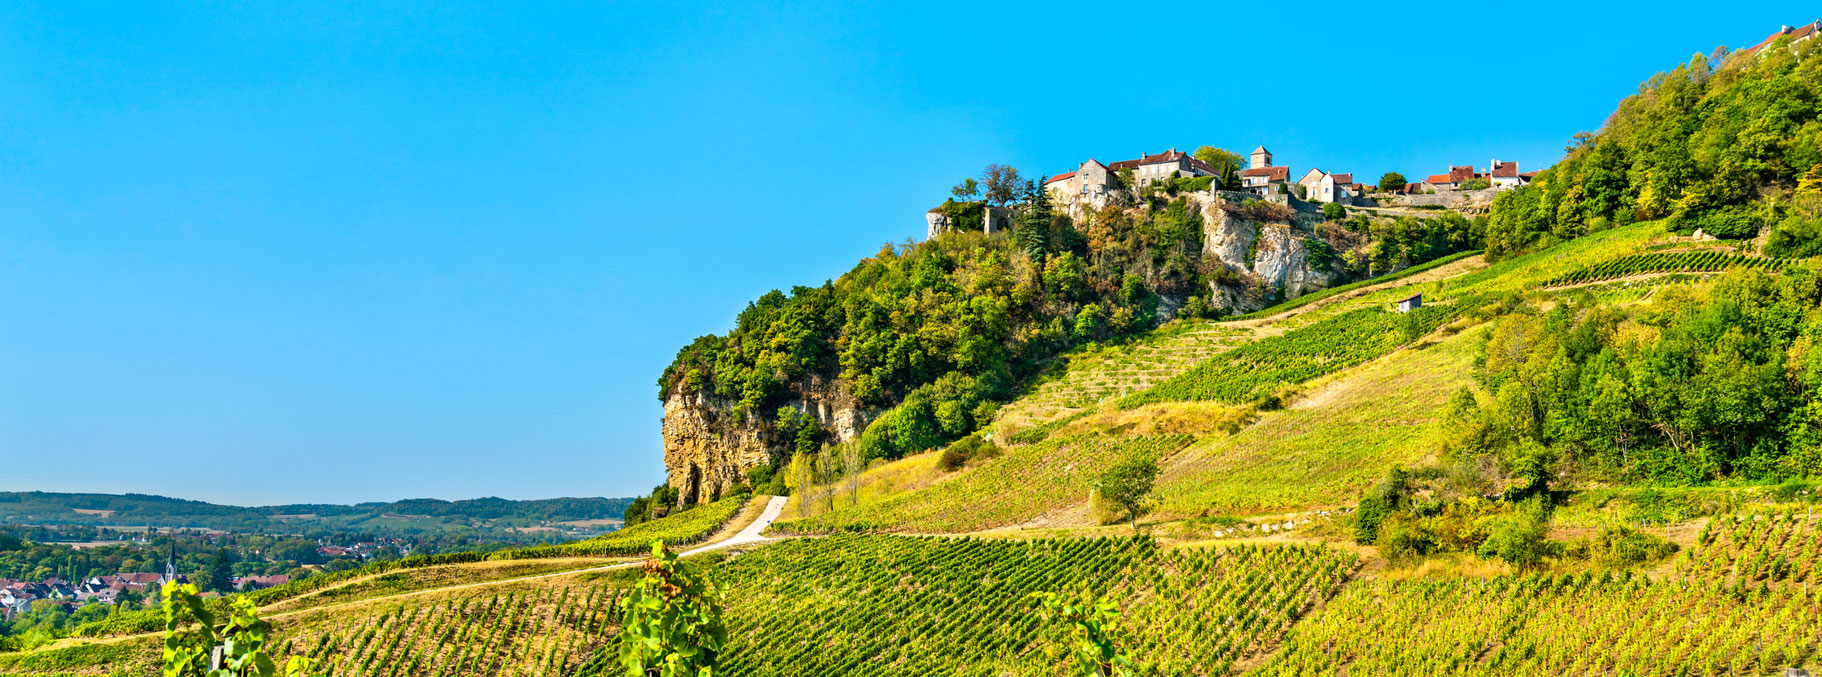 landsbyen Chateau Chalon med vinmarker rundt.